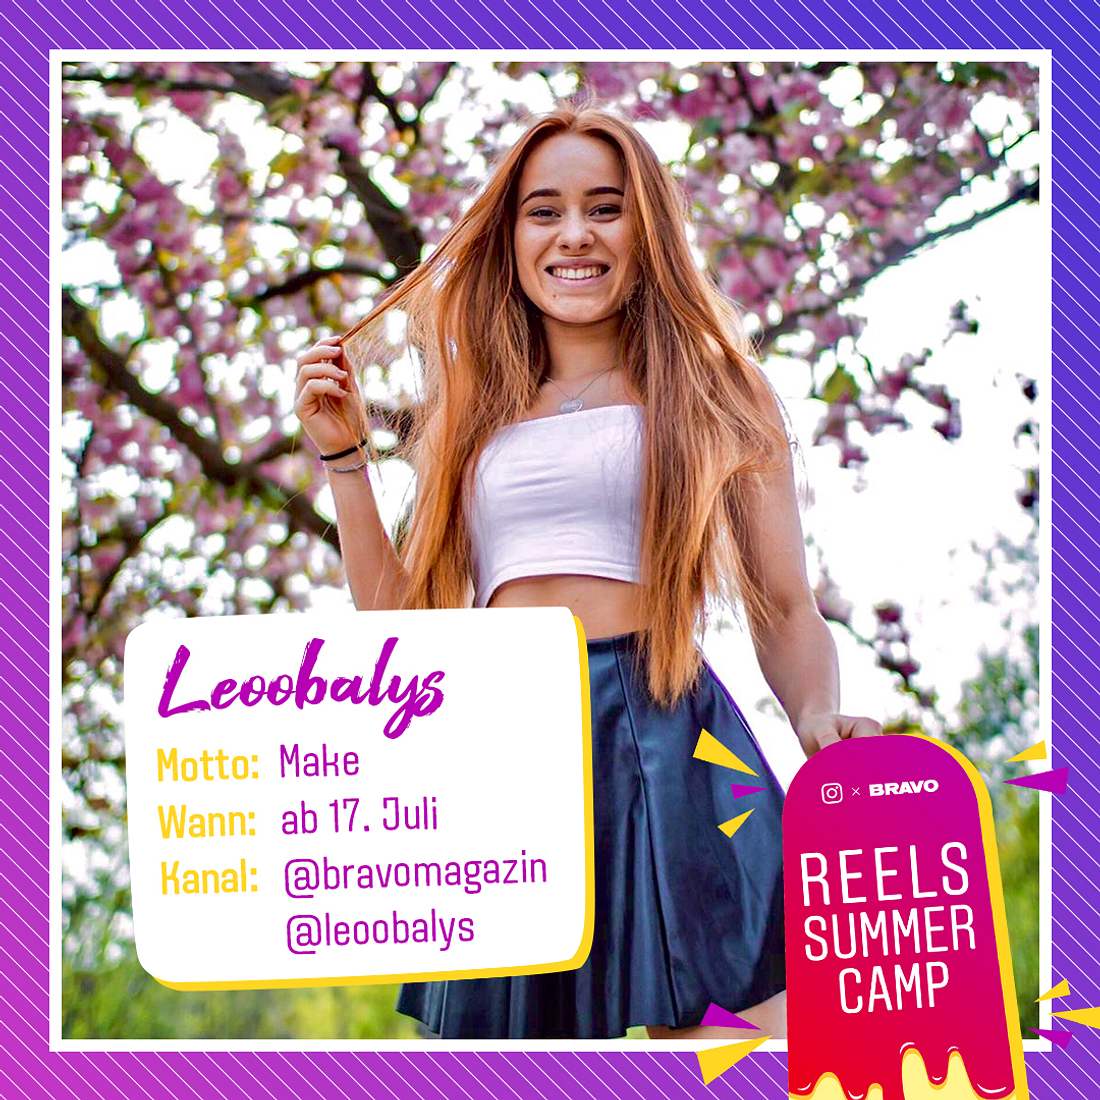 Make: Leoobalys supportet das #ReelsSummerCamp auf Instagram